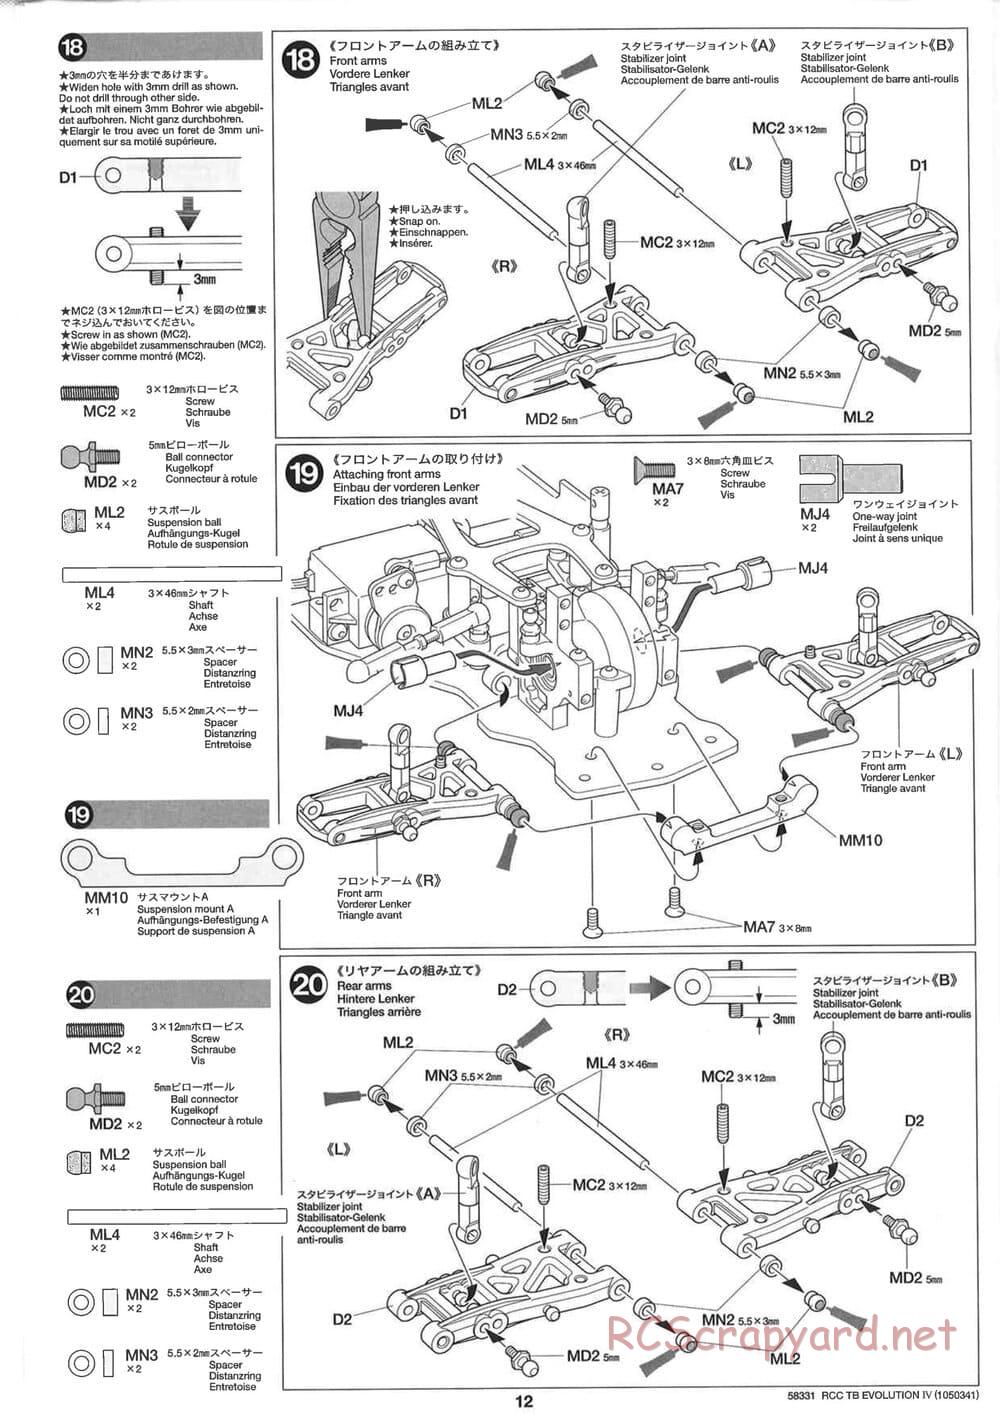 Tamiya - TB Evolution IV Chassis - Manual - Page 12